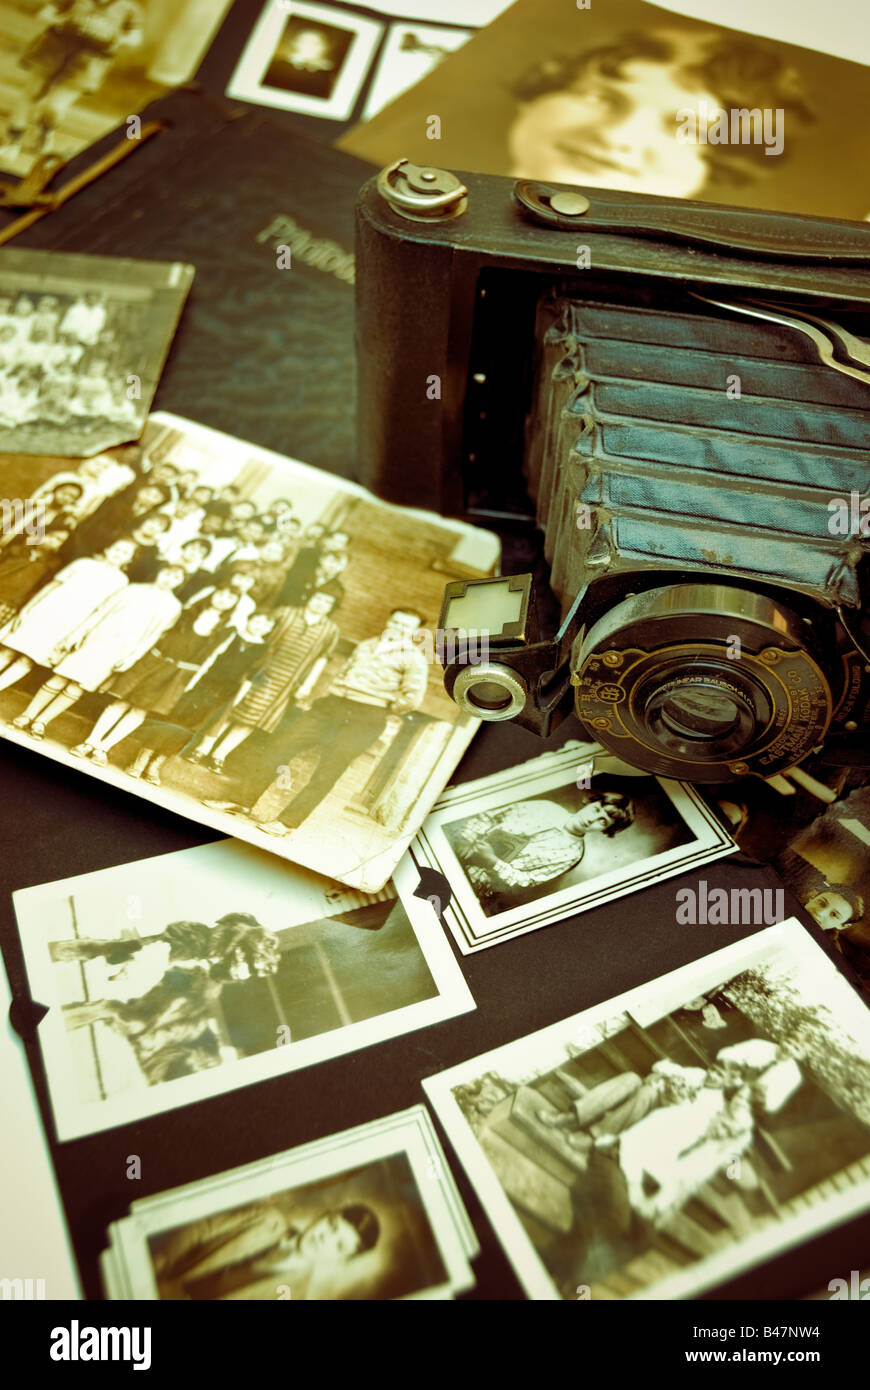 Eine antike Eastman Kodak Brownie Kamera und Vintage-Familie und Klasse Fotografien schaffen ein nostalgisches Gefühl. Stockfoto